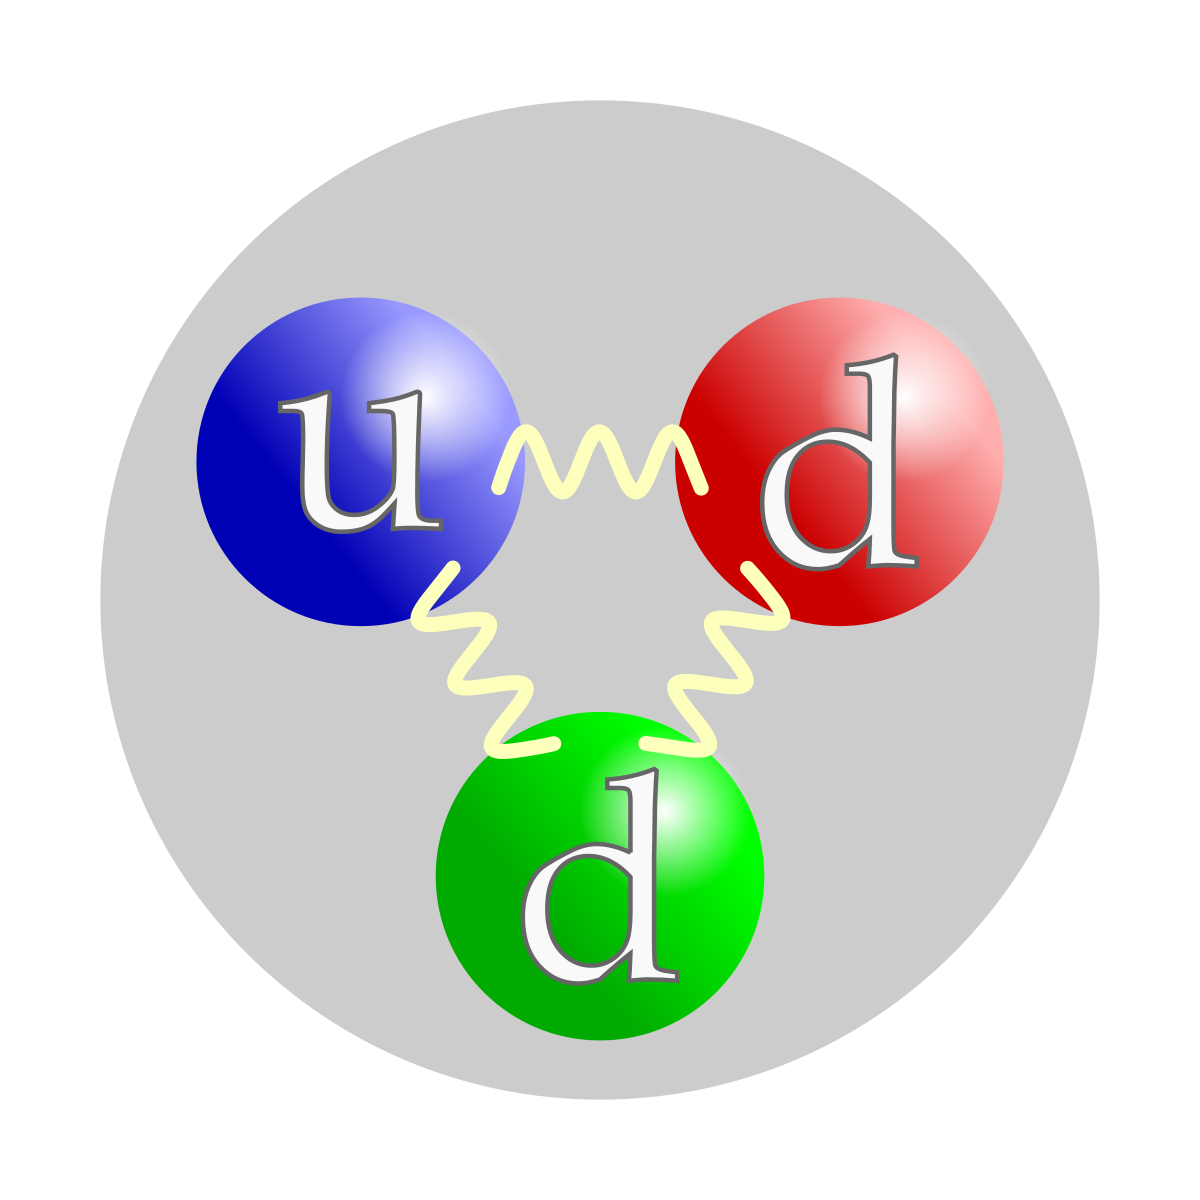 Représentation schématique de la composition en quarks d'un neutron, avec deux quarks d et un quark u. L'interaction forte est transmise par des gluons (représentés ici par un tracé sinusoïdal). La couleur des quarks fait référence aux trois types de charges de l'interaction forte : rouge, verte et bleue. Le choix de couleur effectué ici est arbitraire, la charge de couleur circulant à travers les trois quarks.